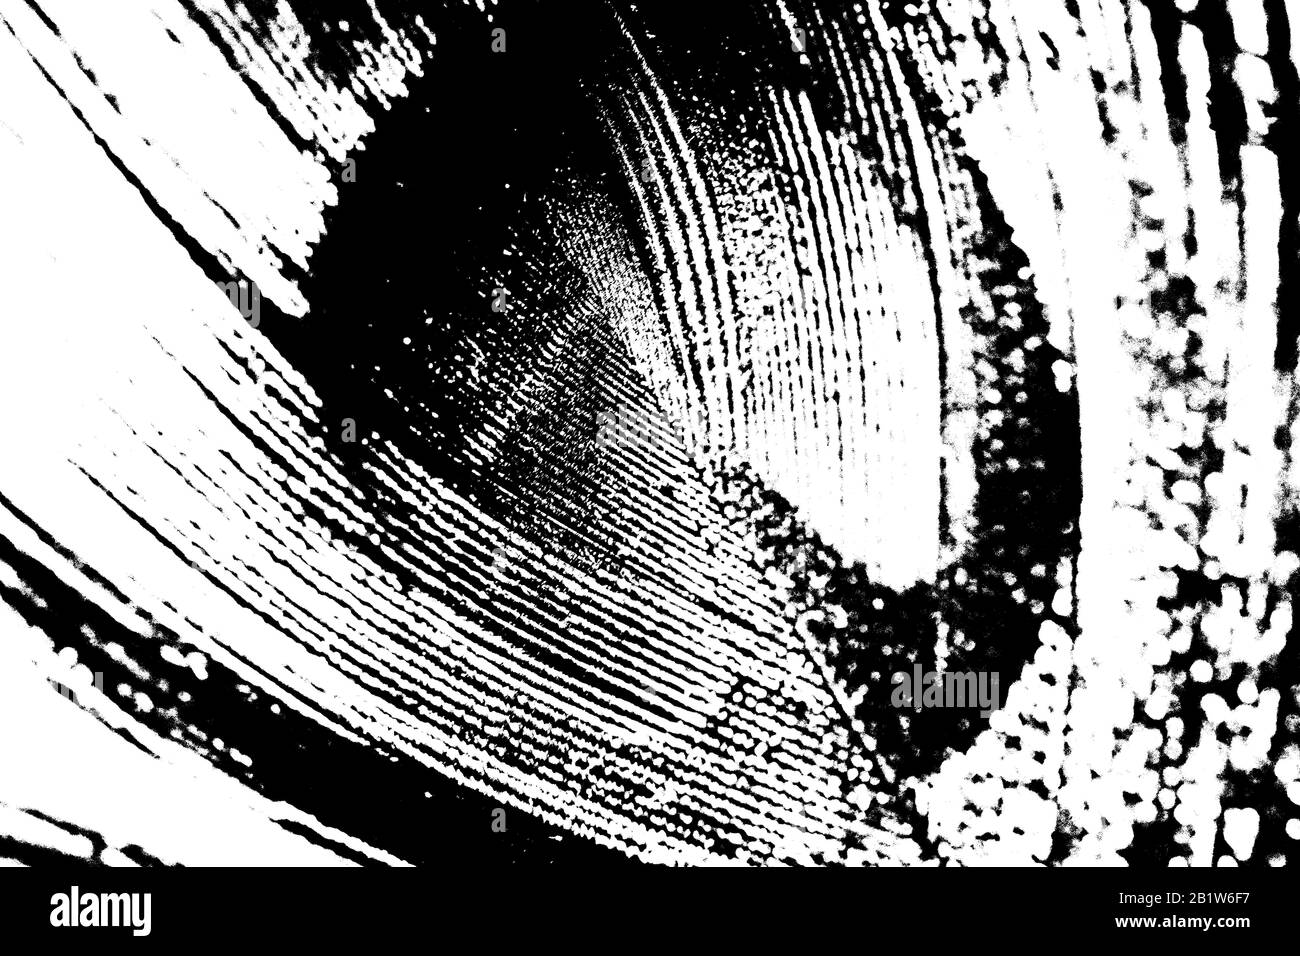 Schwarz-weiß einfache Abbildung eines Pfauenauges. Stockfoto